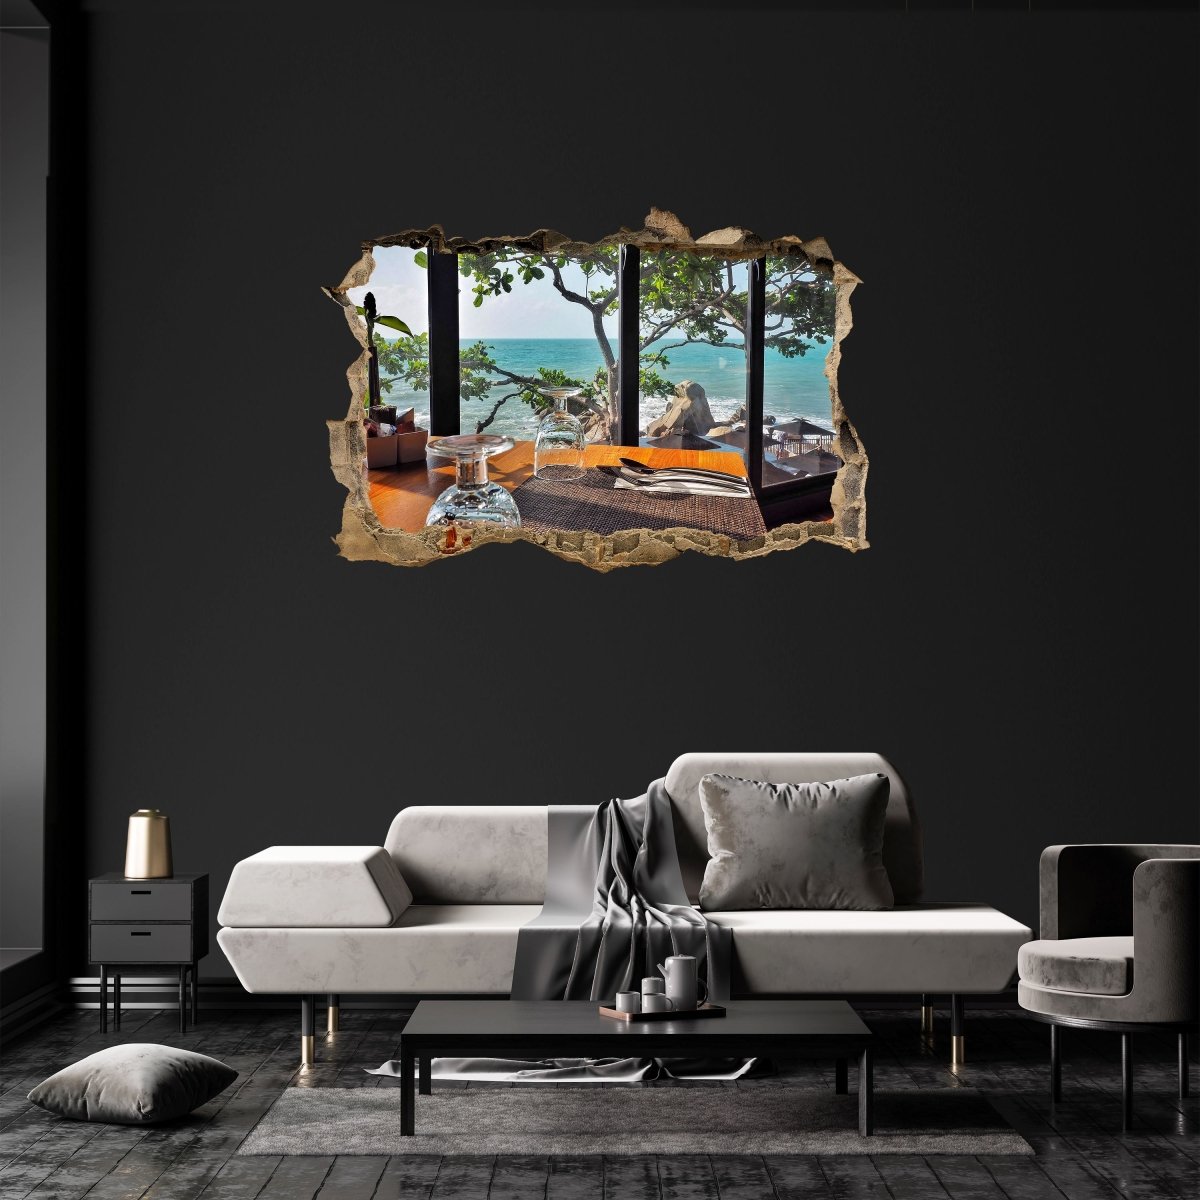 Sticker mural 3D tableau vue mer, arbre, rochers, mer - sticker mural M1282